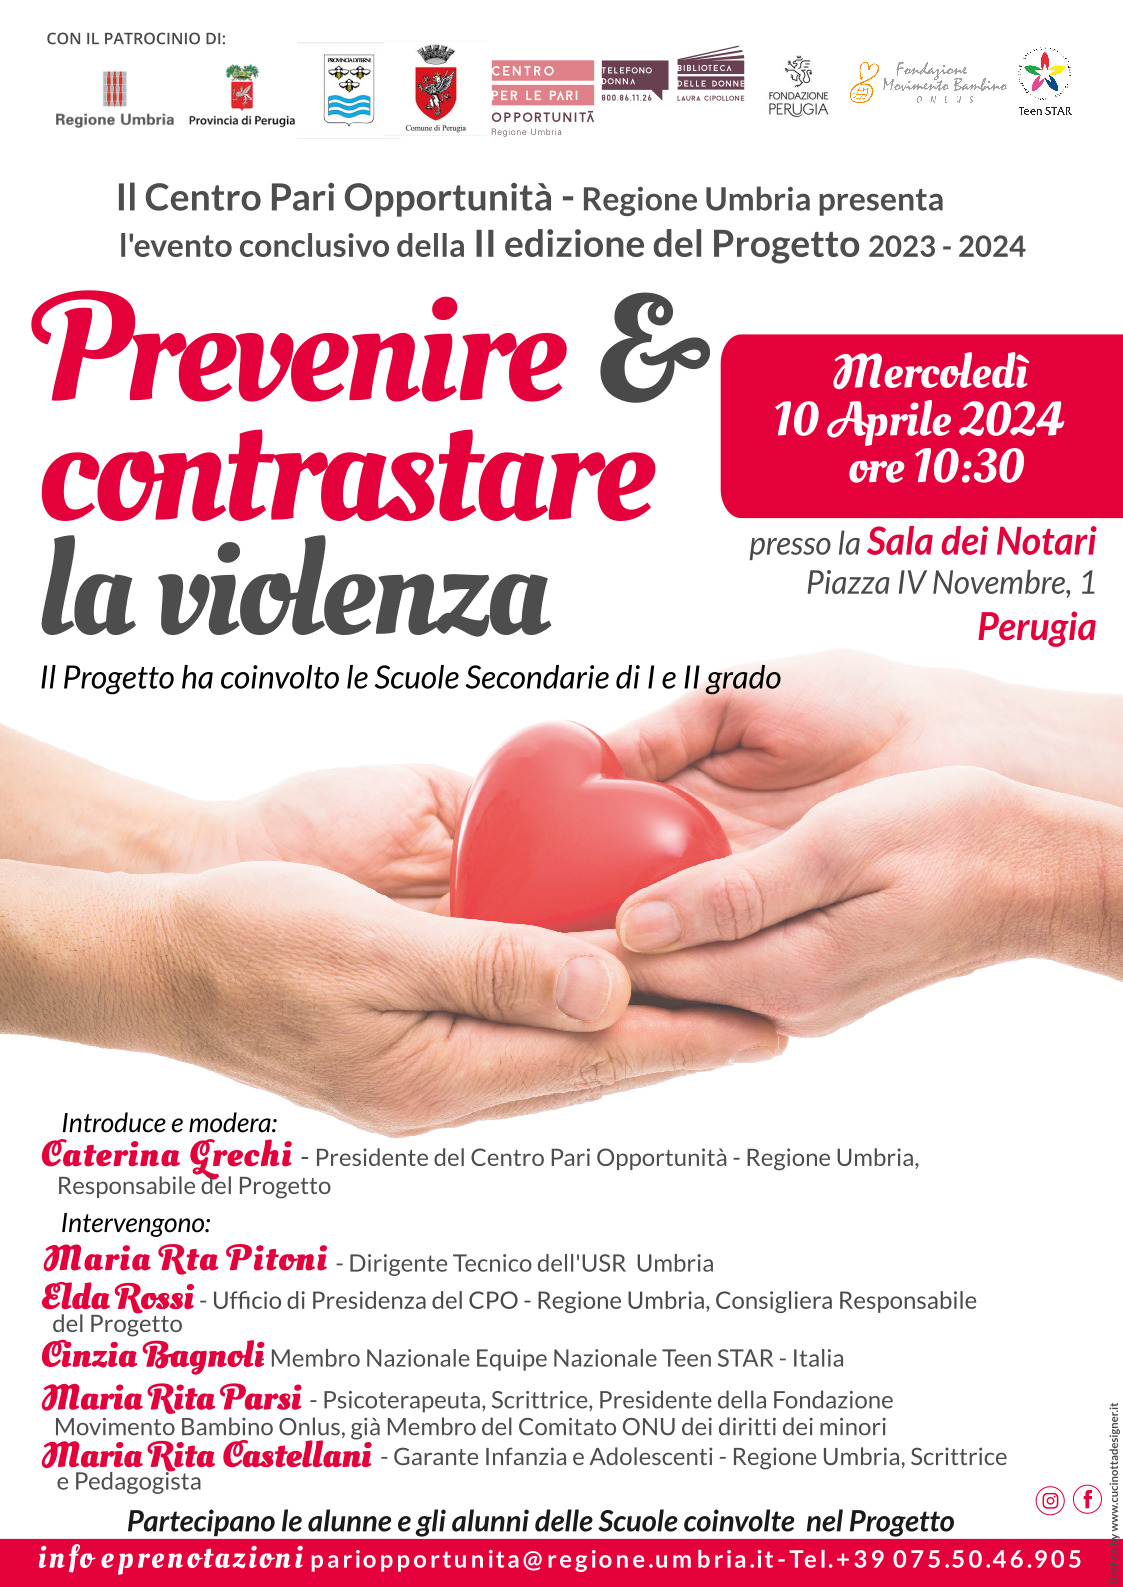 10 APRILE 2024, ore 10.30 – Sala dei Notari (Perugia) Evento conclusivo II Edizione del Progetto “PREVENIRE E CONTRASTARELA VIOLENZA” 2023/2024